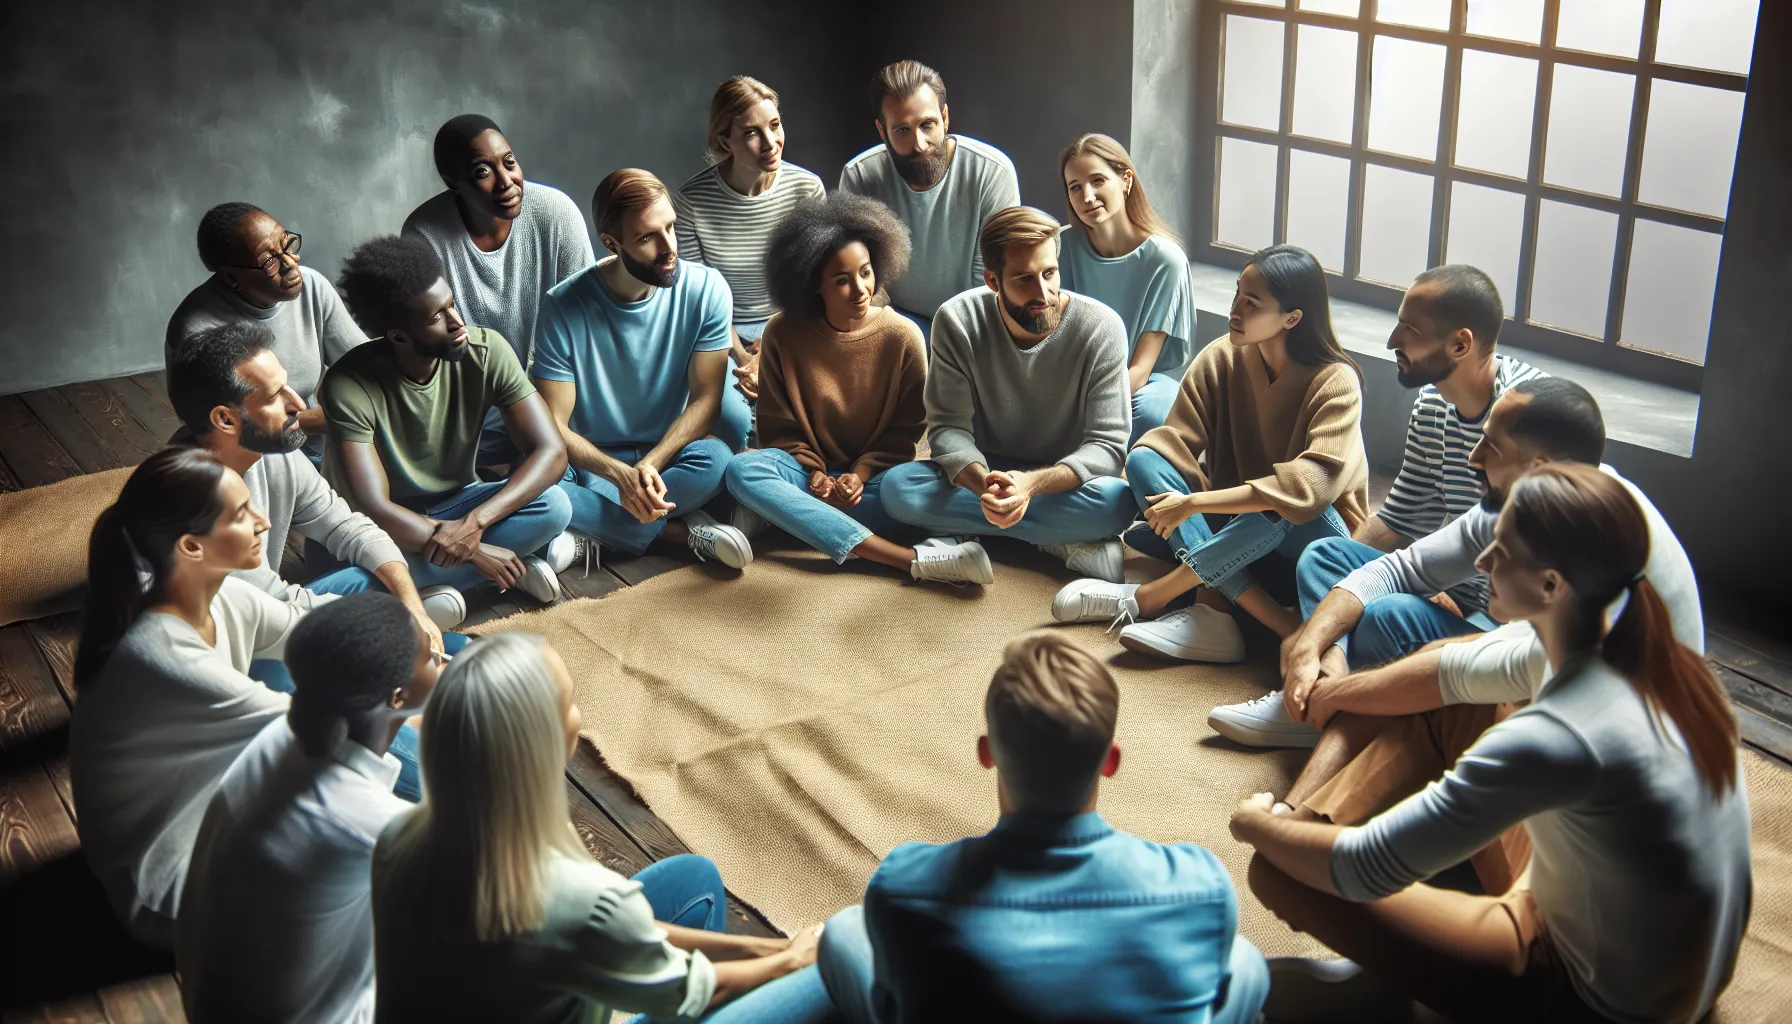 Un grupo de personas sentadas en círculo, participando en una sesión de discipulado cristiano y compartiendo experiencias de crecimiento espiritual.